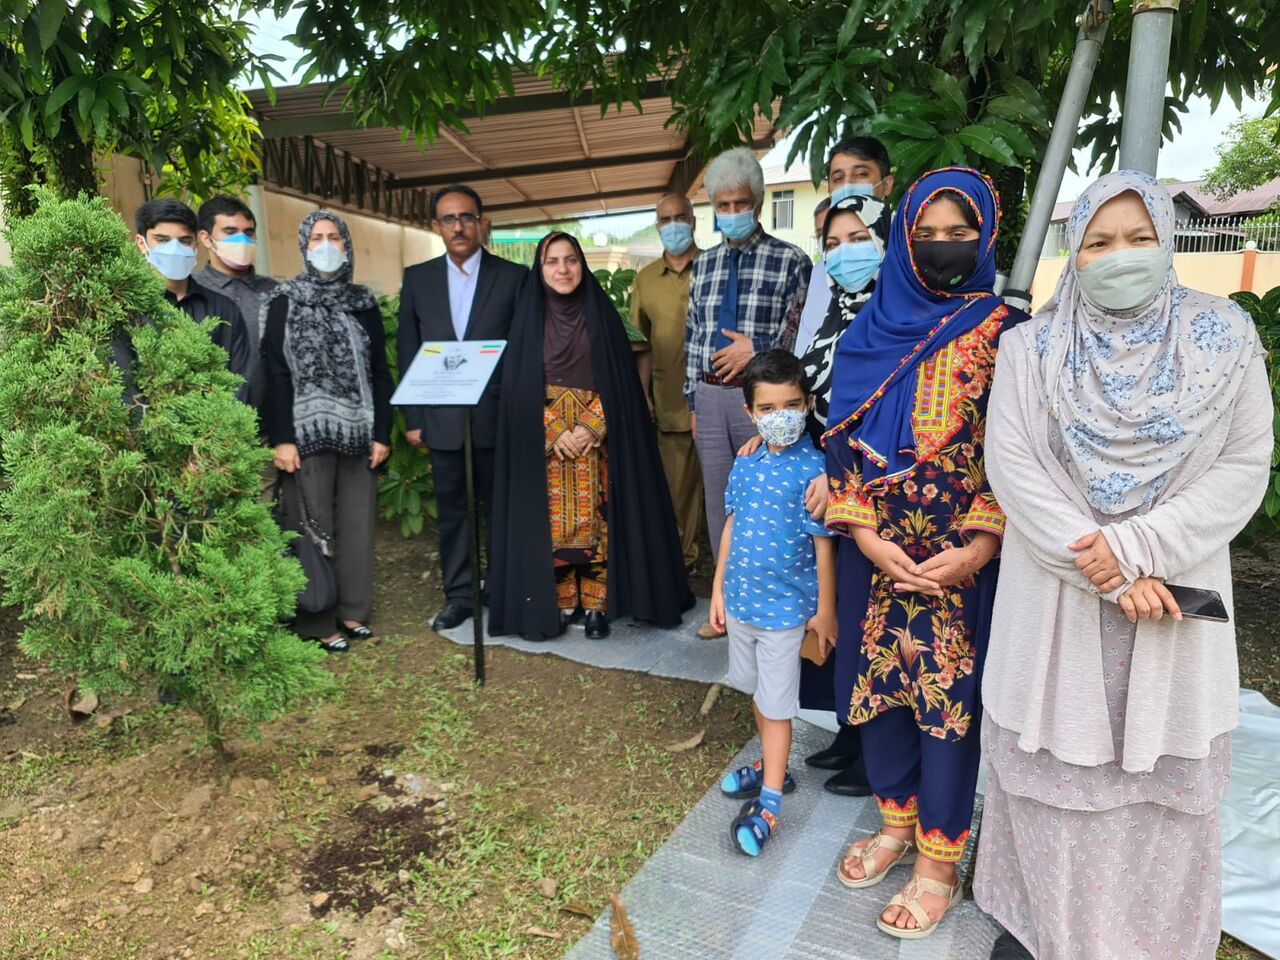 کاشت درخت مقاومت به یاد شهید سلیمانی در سفارت ایران در برونئی